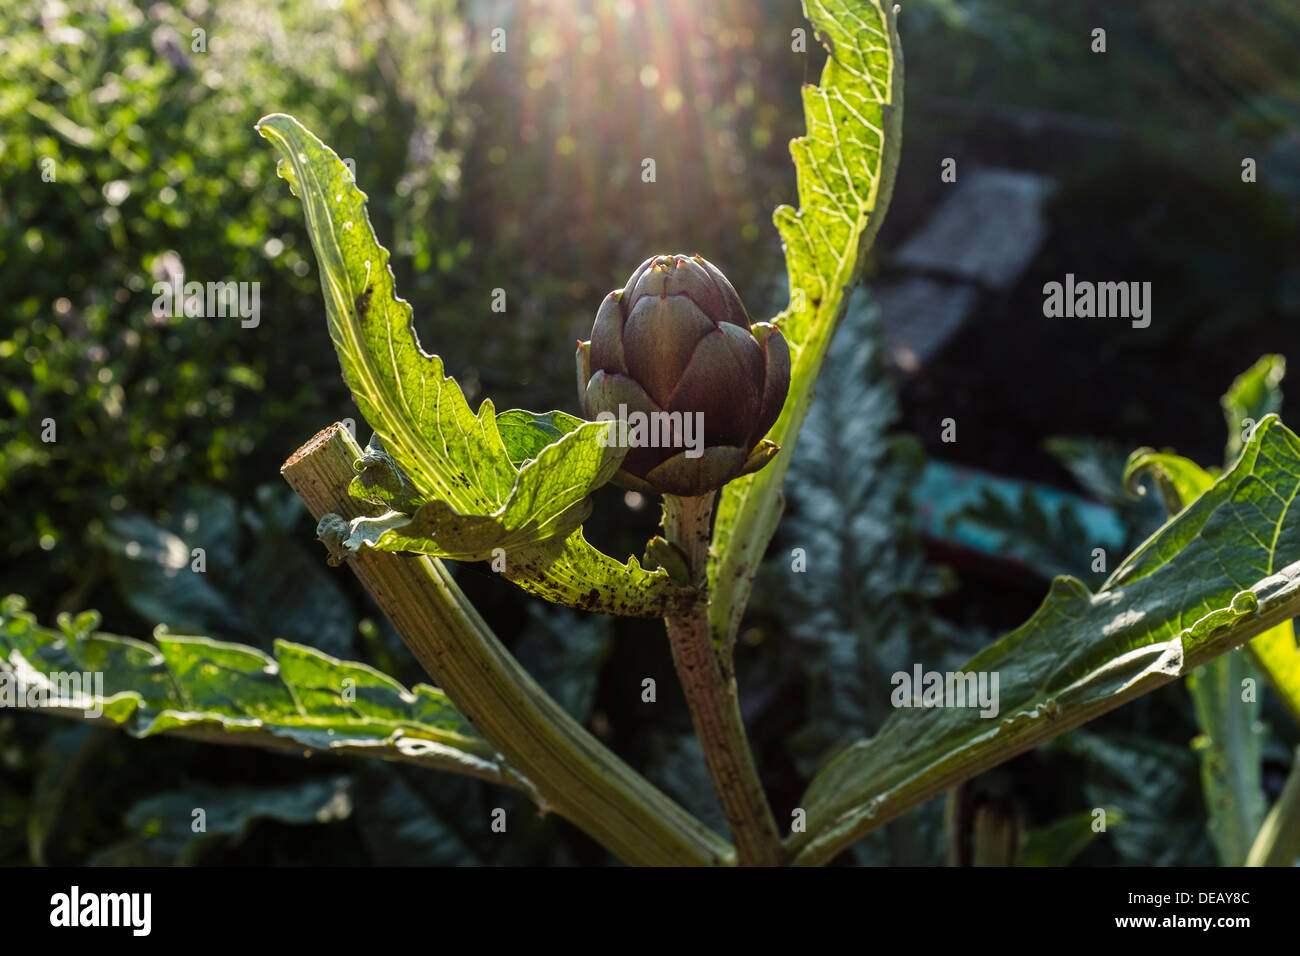 A globe artichoke growing on an Allotment garden, summer, UK Stock Photo